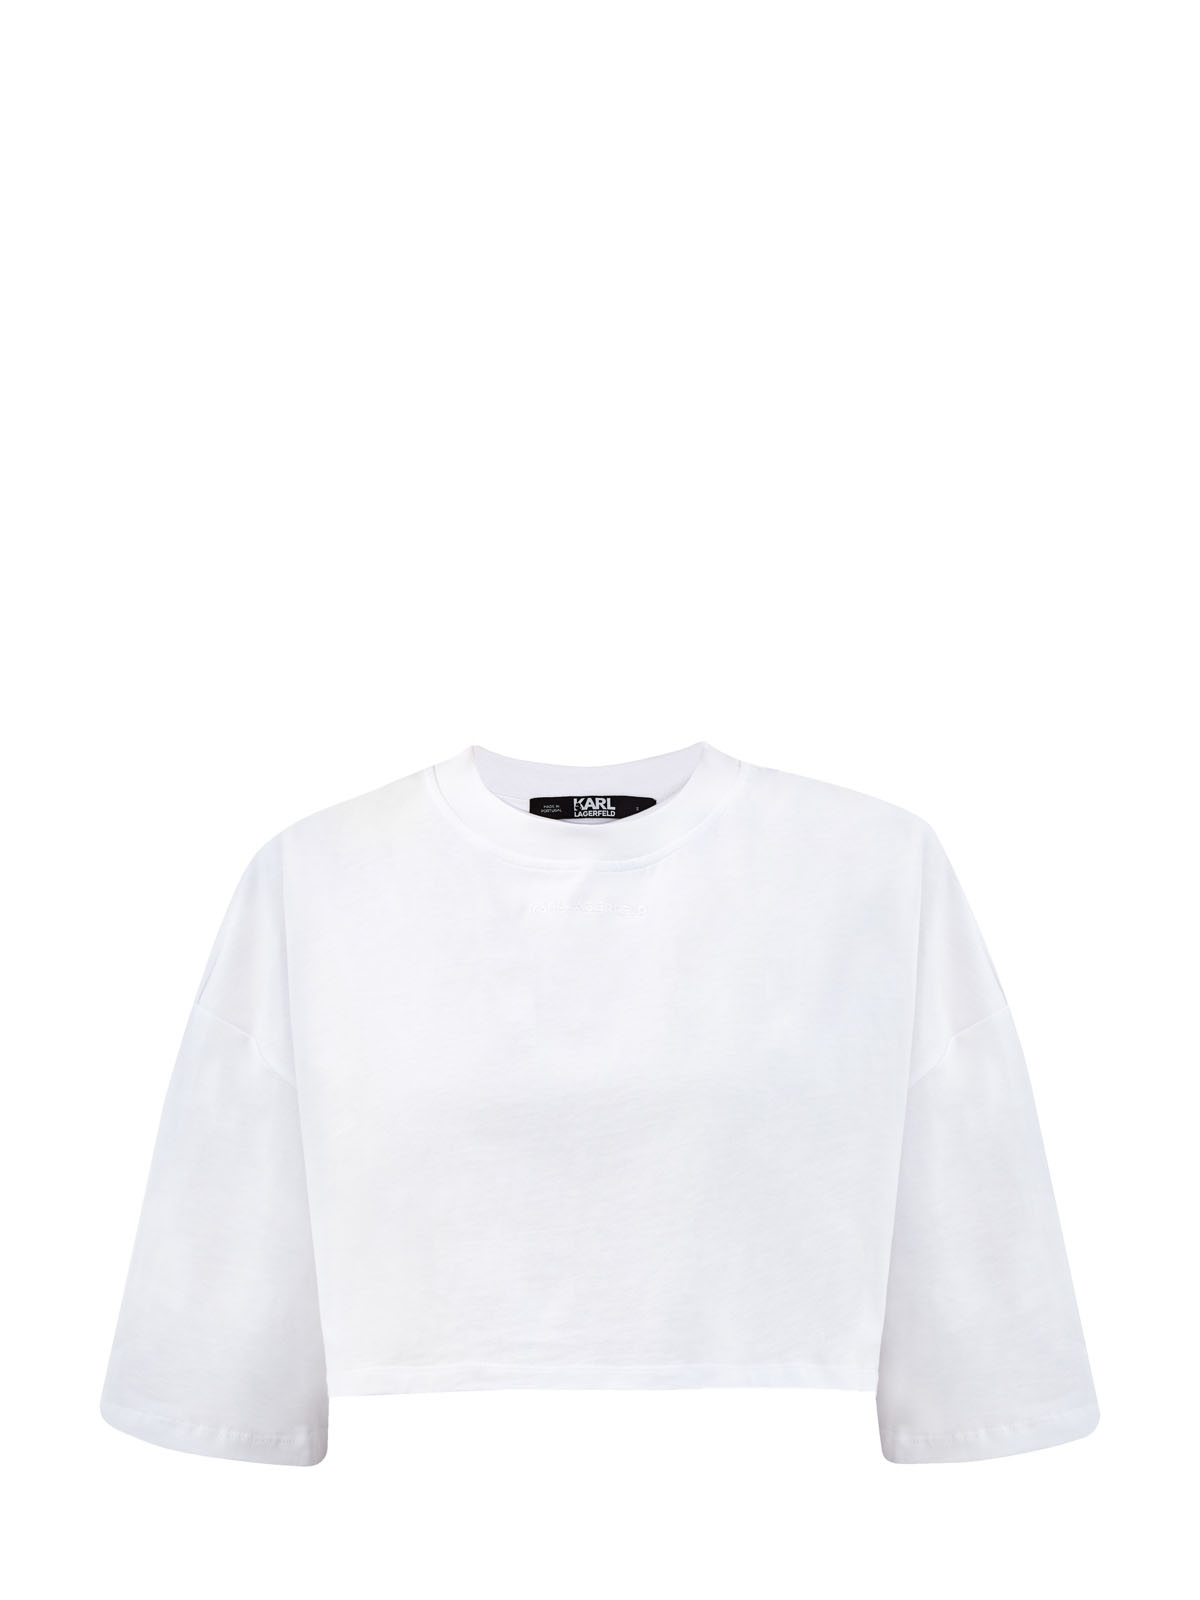 Укороченная футболка из хлопка с вышивкой в тон KARL LAGERFELD, цвет белый, размер XS;S;M - фото 1